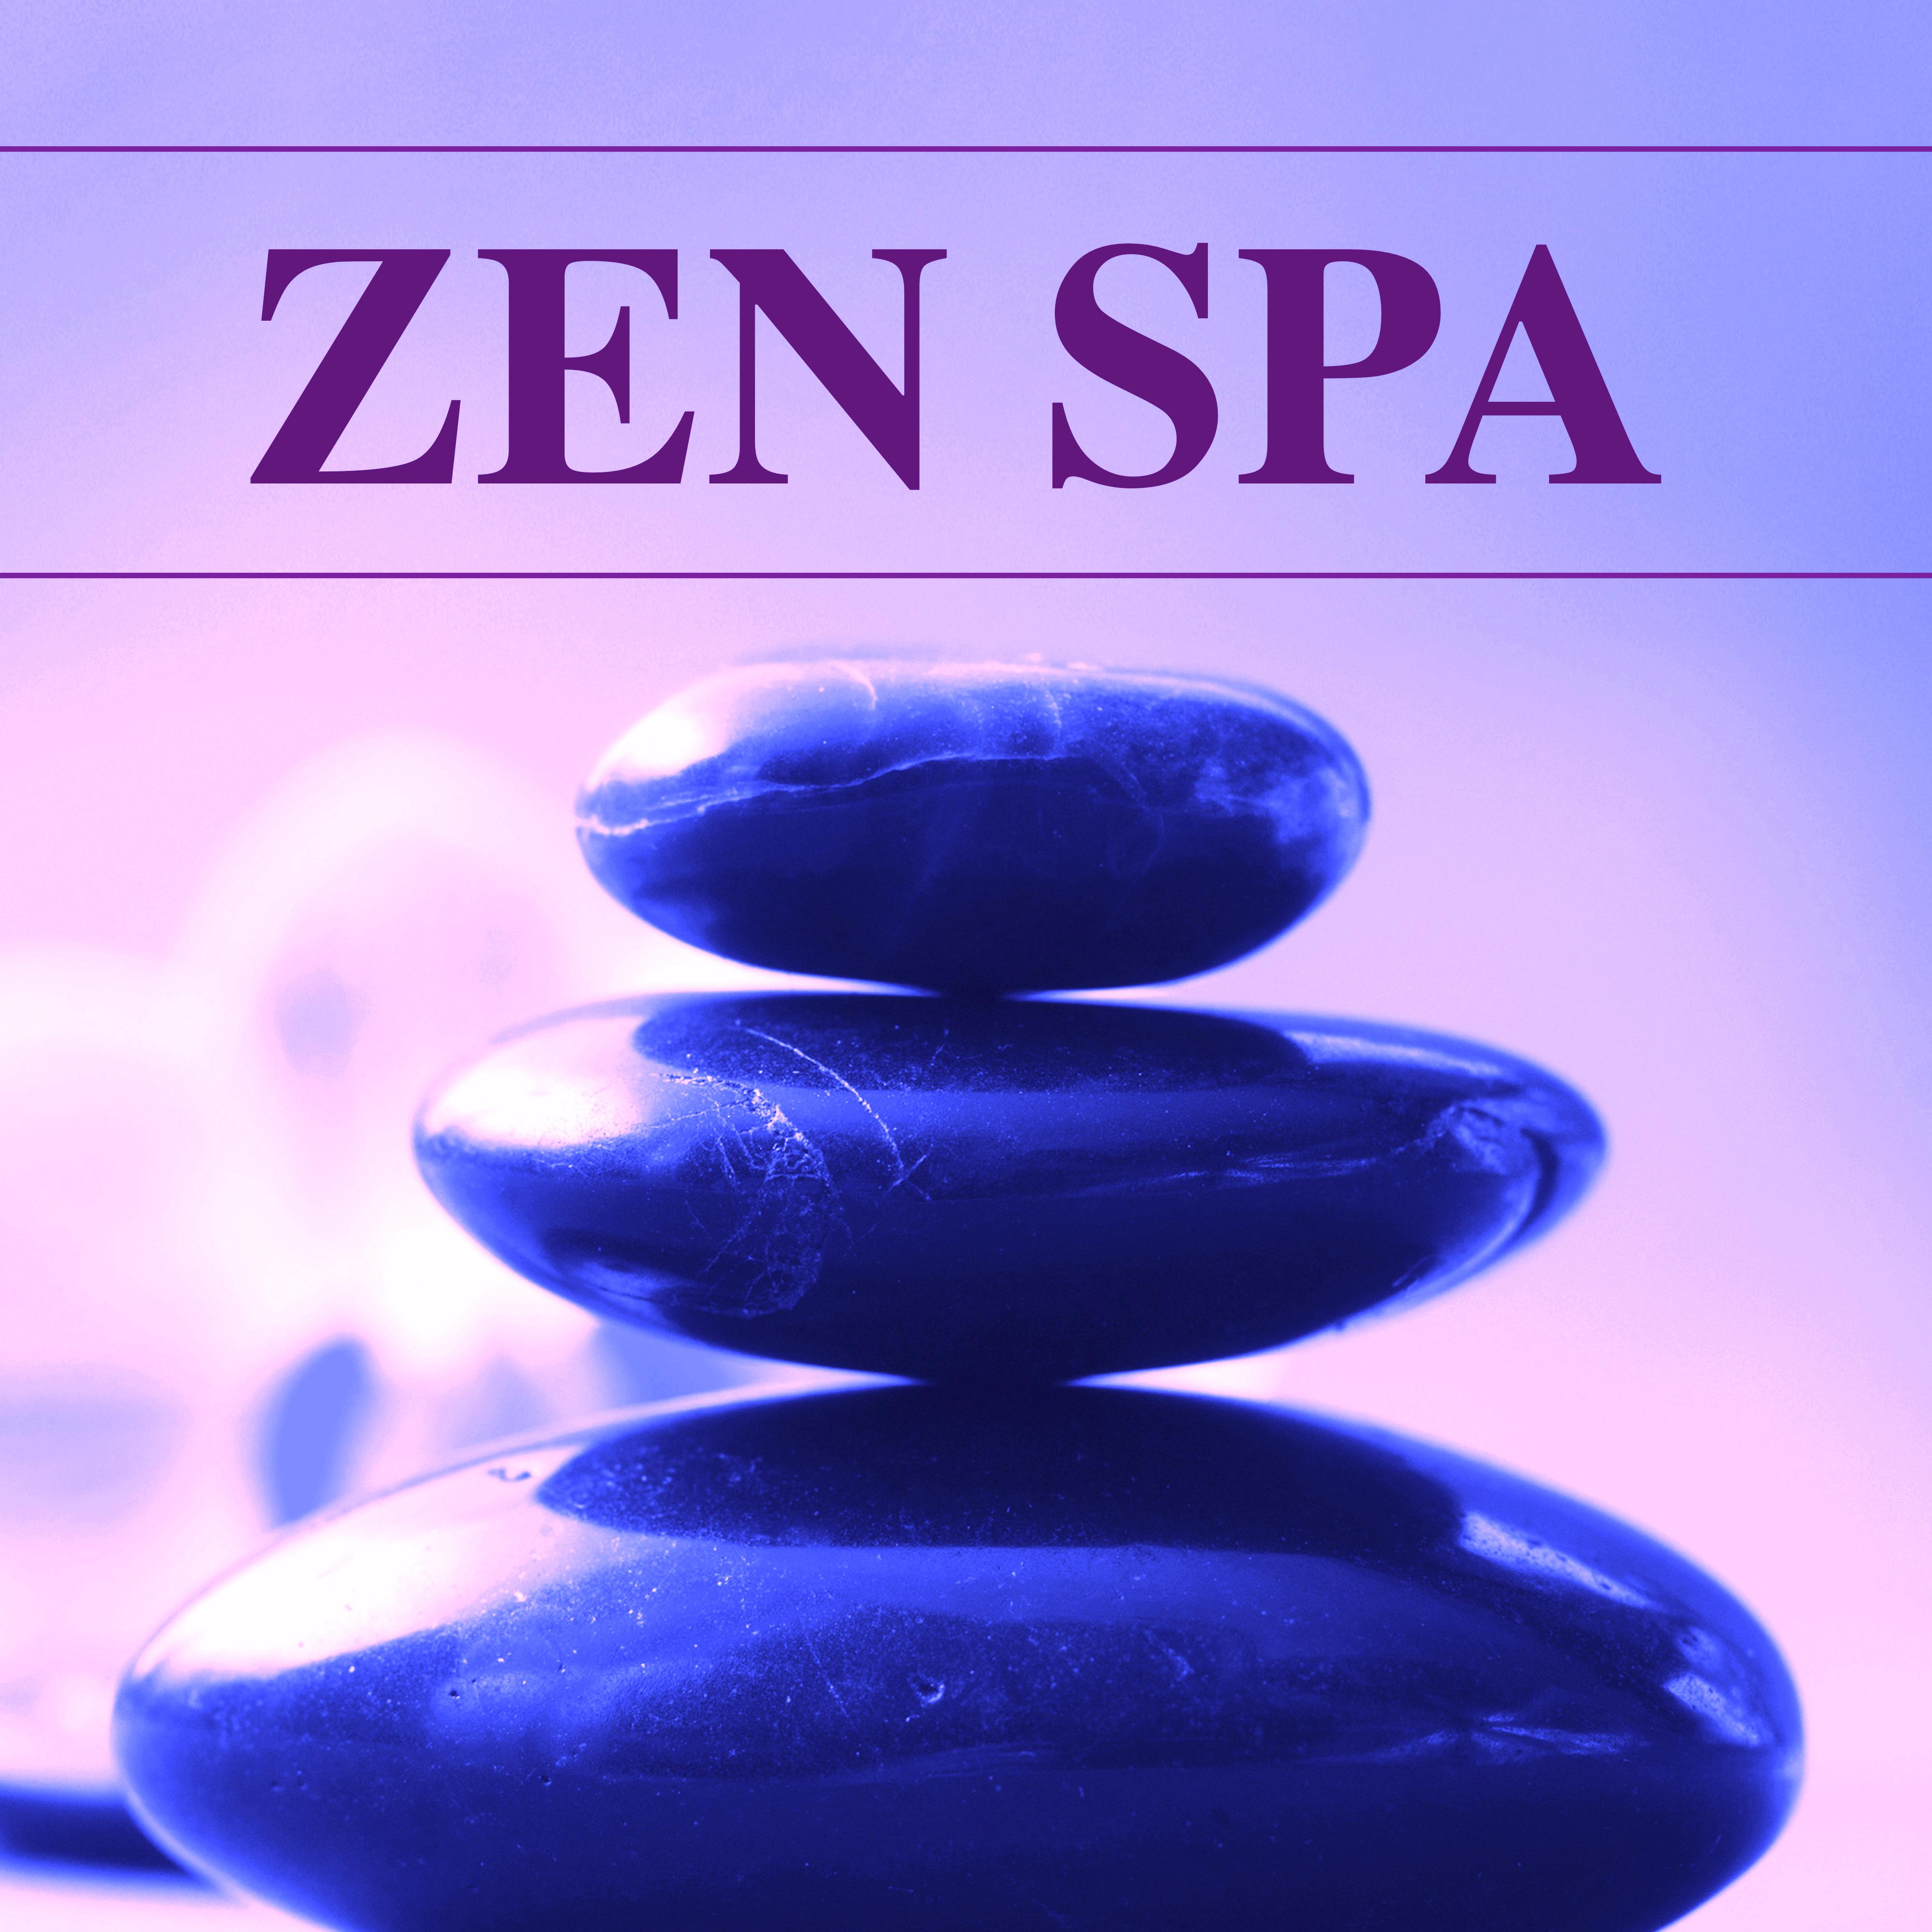 Zen Spa: Musique New Age pour Relaxation et Me ditation au Spa, Musique Relaxante pour Massage, Yoga, Beaute et Bien tre